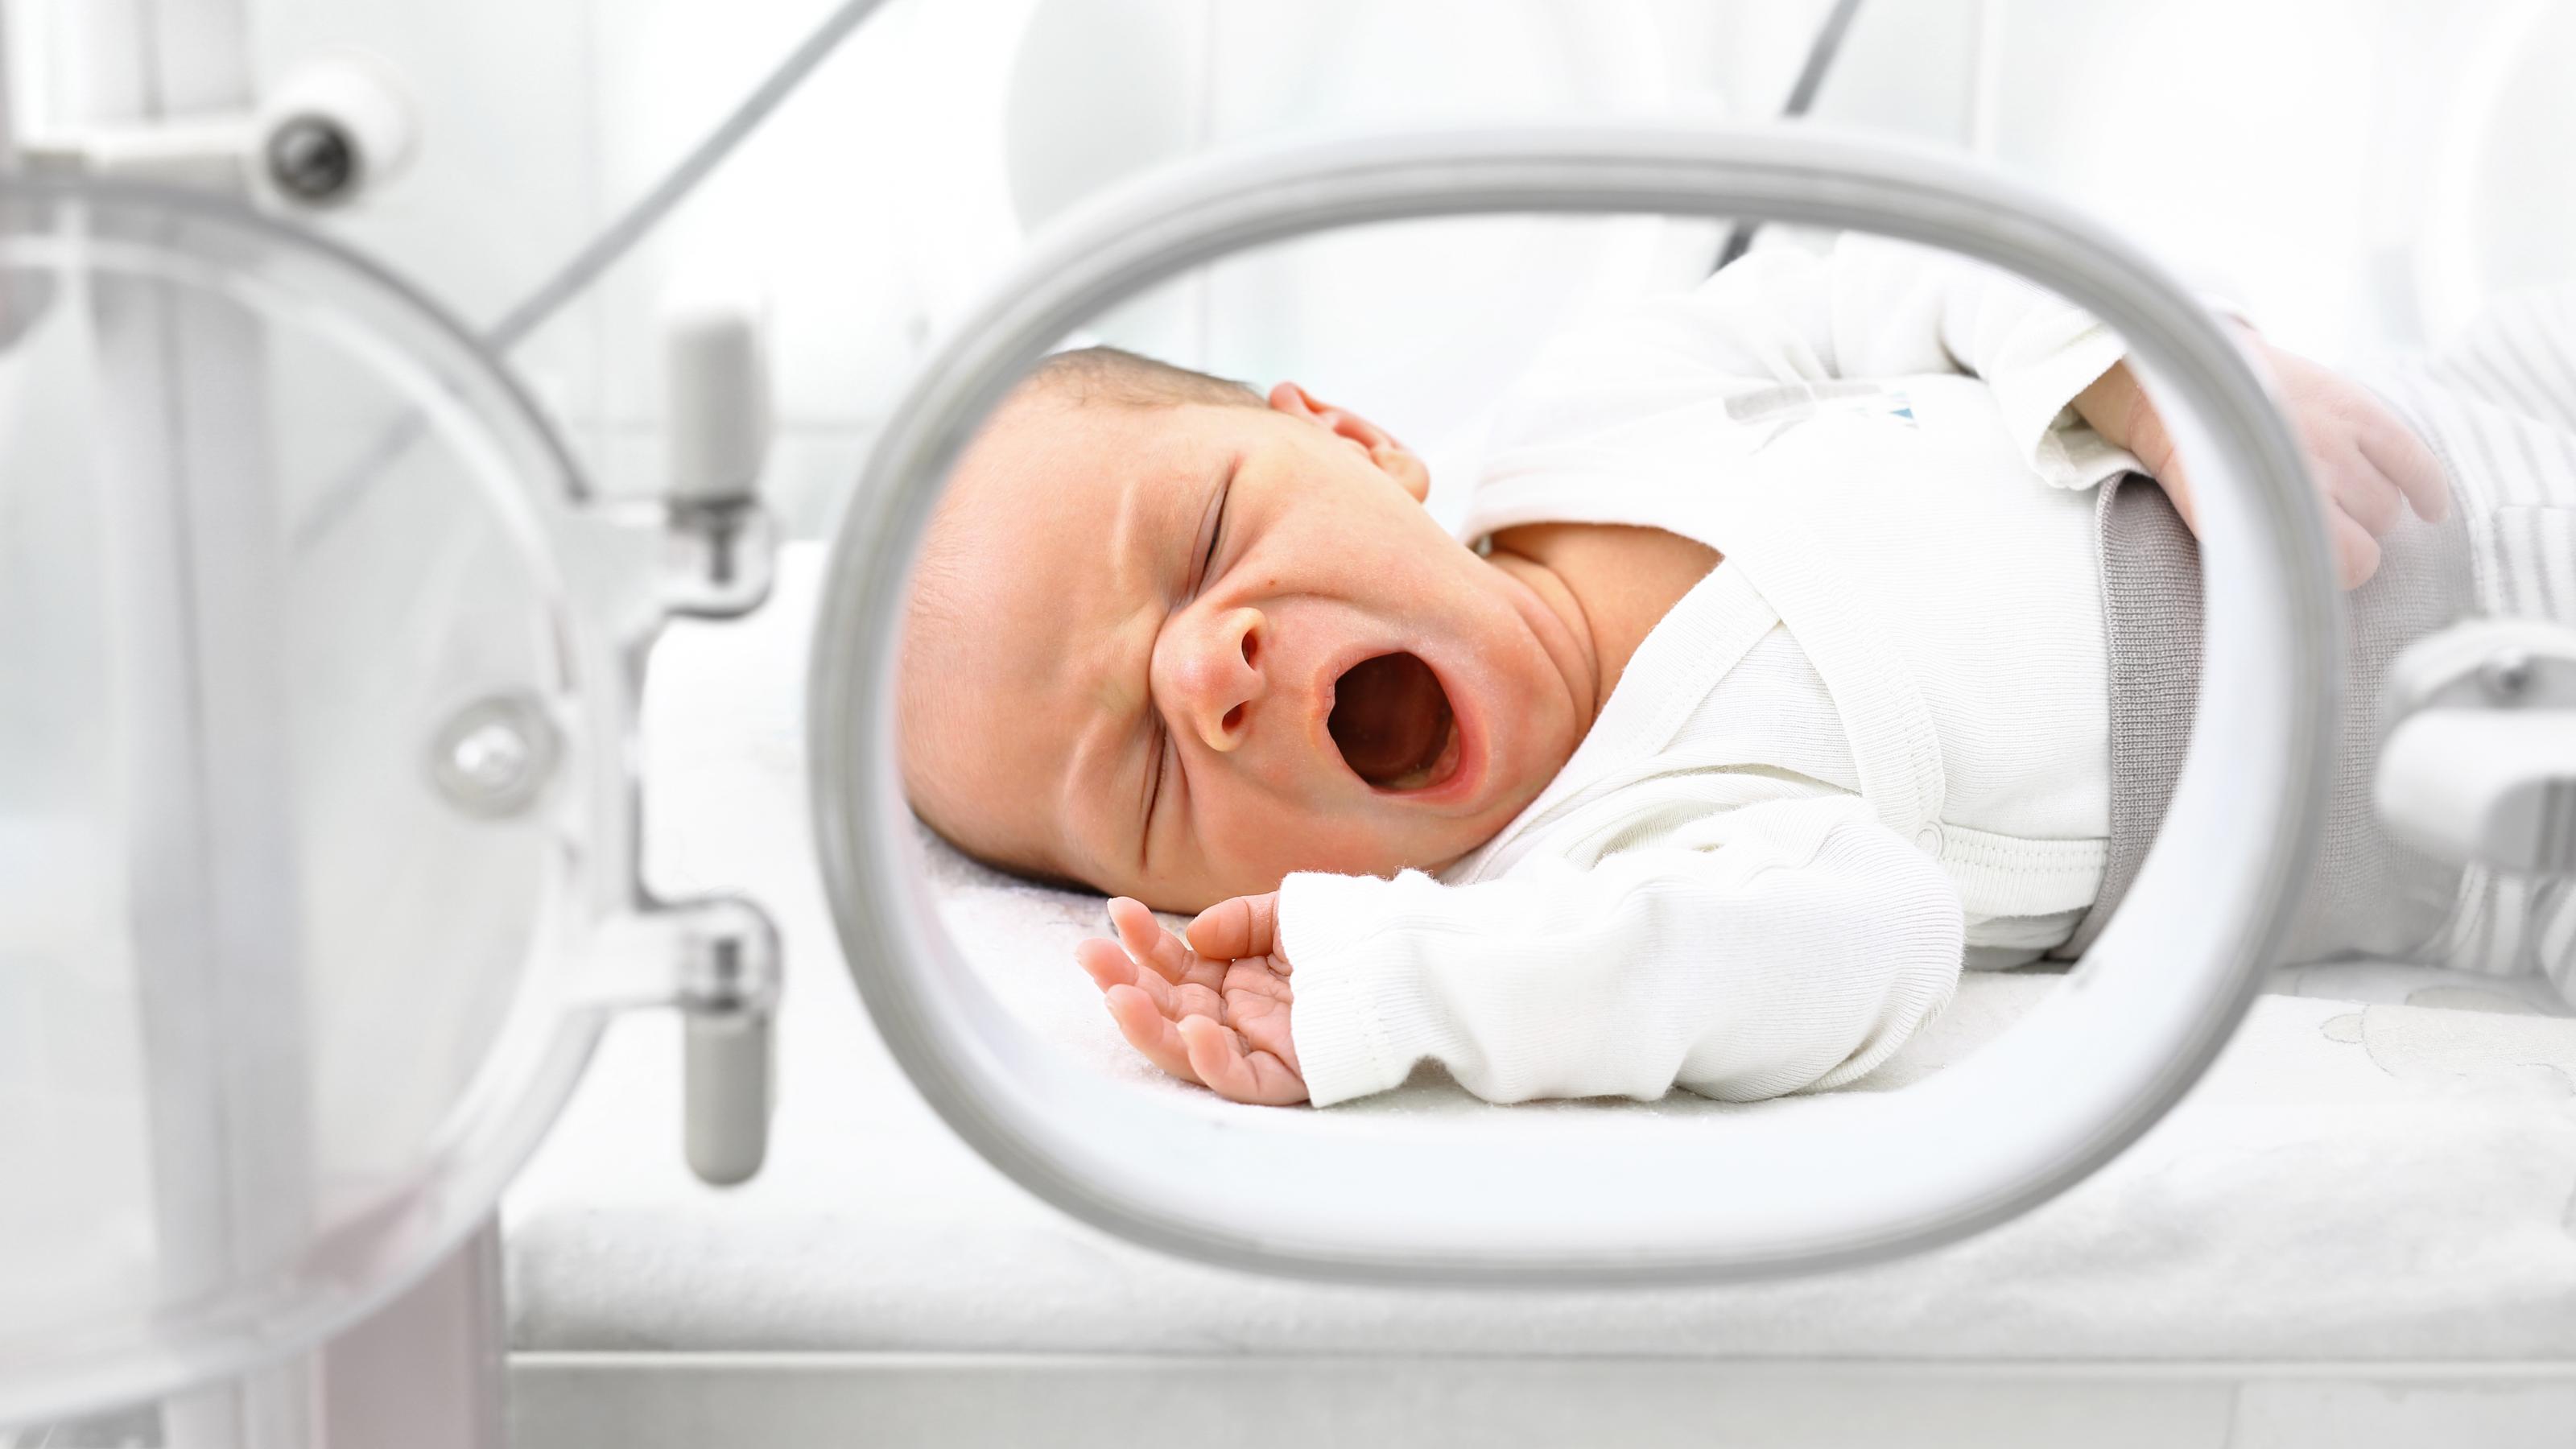 Durch das Fenster im Inkubator sieht man ein Neugeborenes mit offenem Mund. Viele Geburtsstationen stehen vor großen finanziellen Problemen.